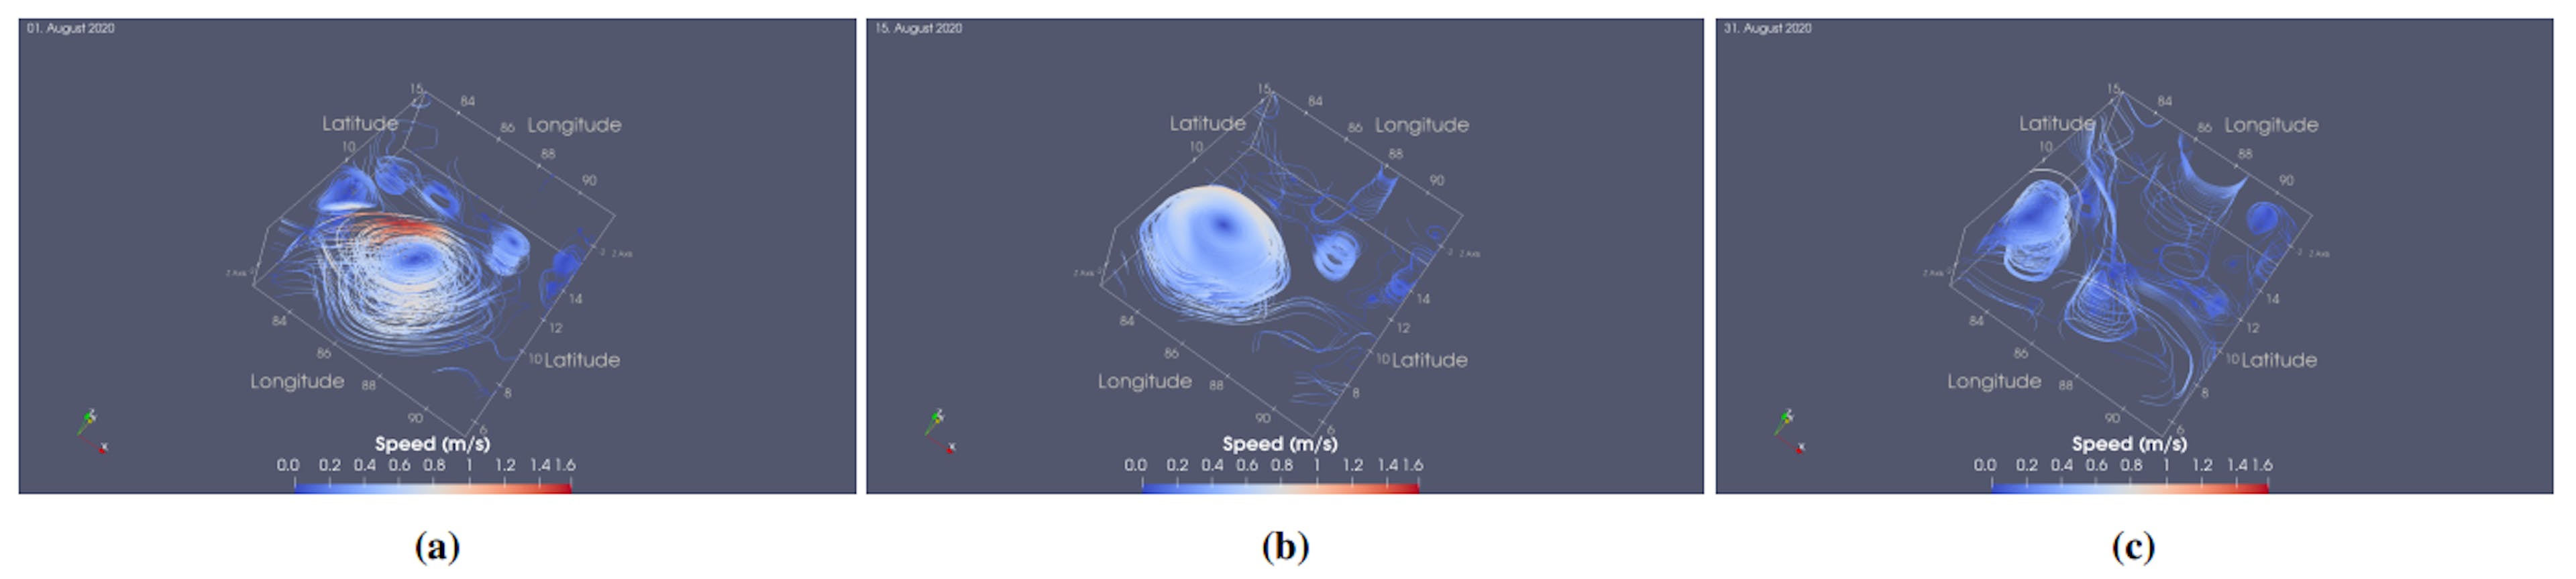 Figura 6: Disipación de un gran remolino anticiclónico en la Bahía de Bengala hasta agosto de 2020. Se siembran líneas de corriente cerca de los núcleos de vórtice detectados para mostrar la evolución de los perfiles de los remolinos en 3D.